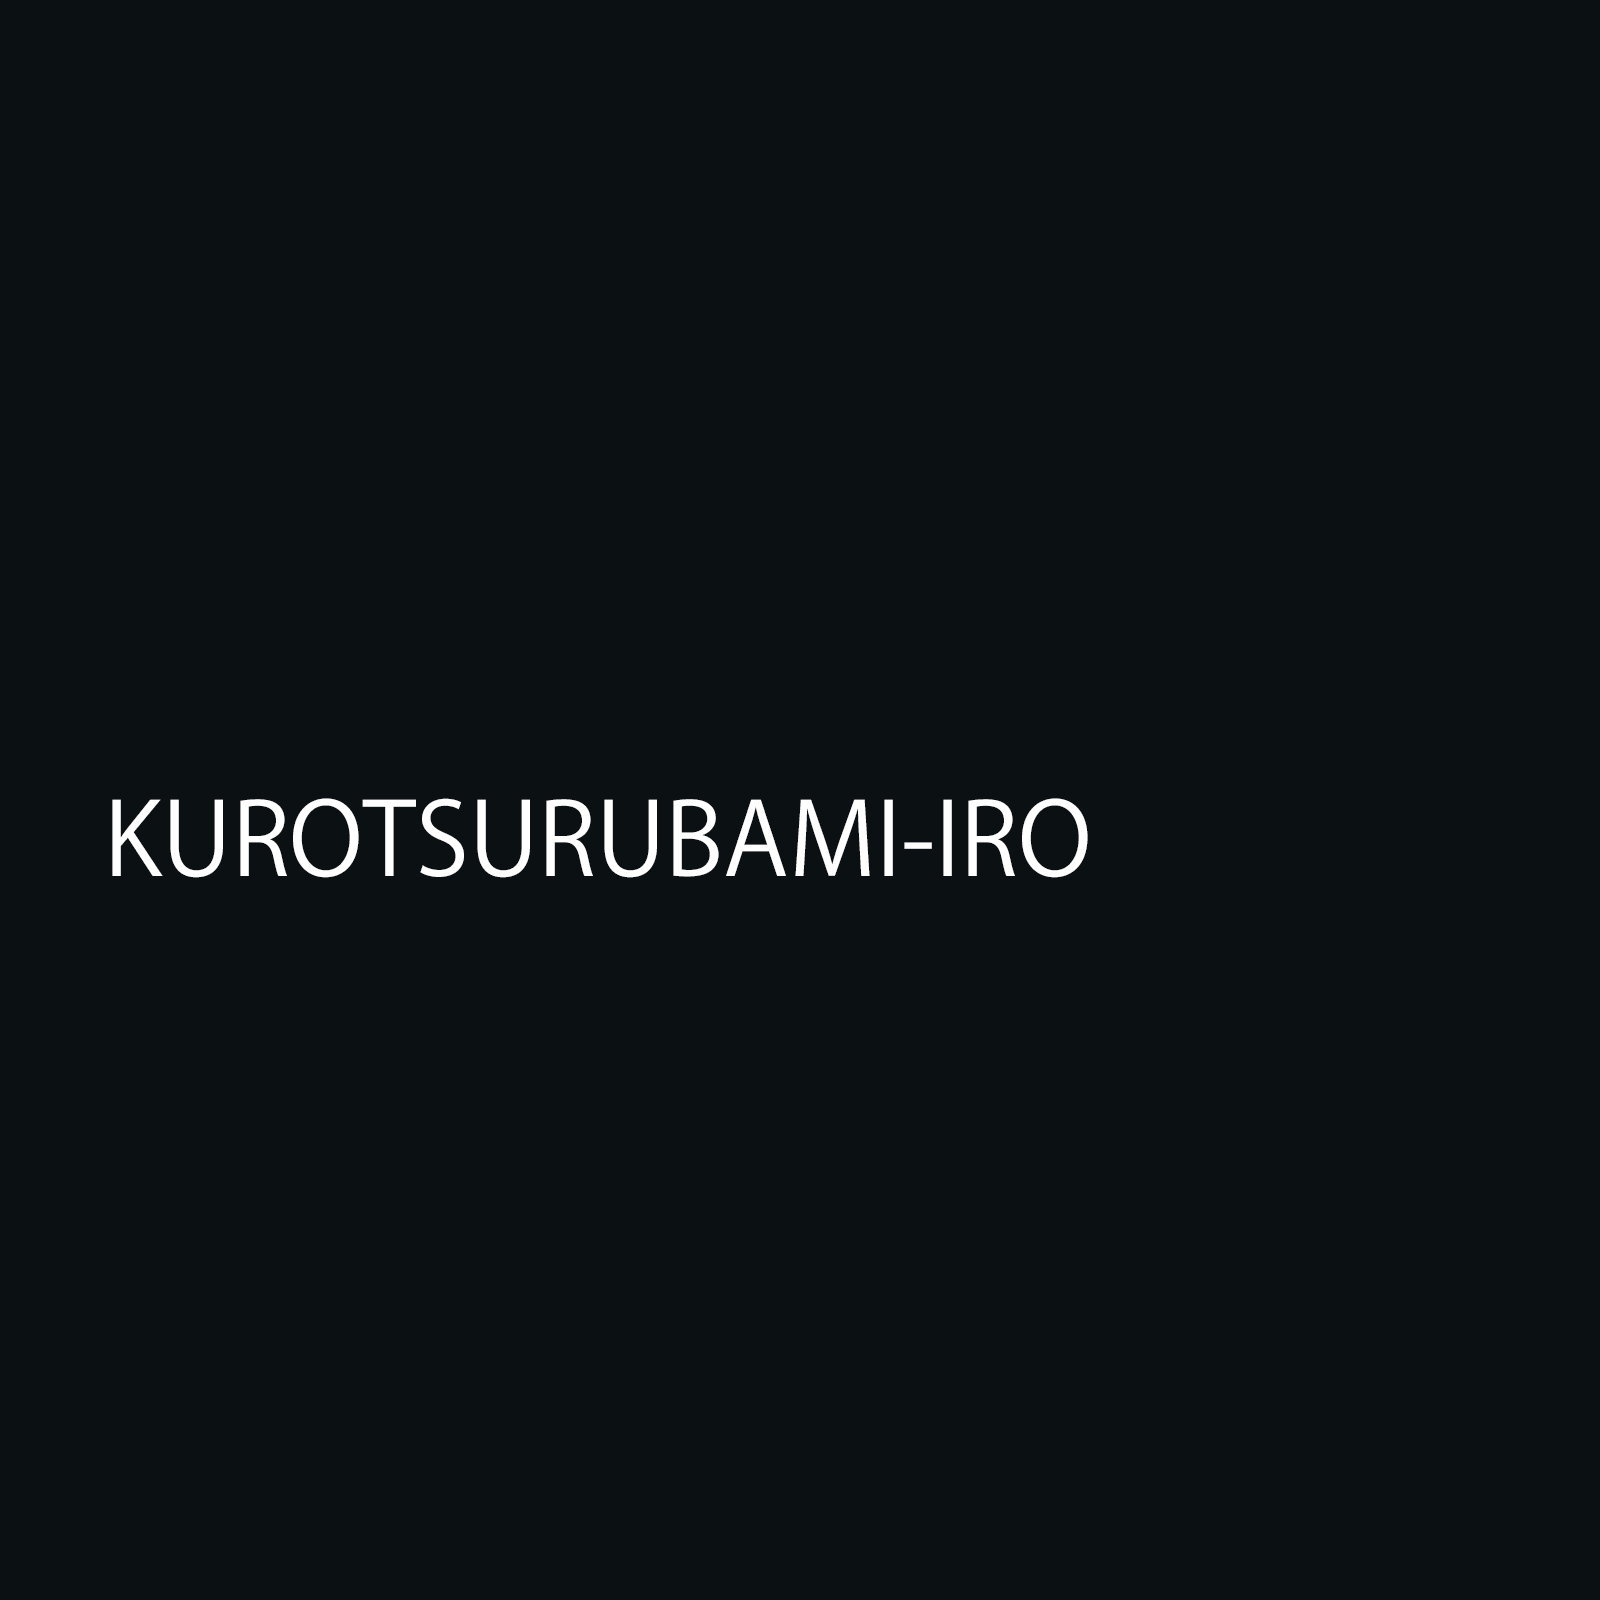 kurotsurubamiiro.jpg